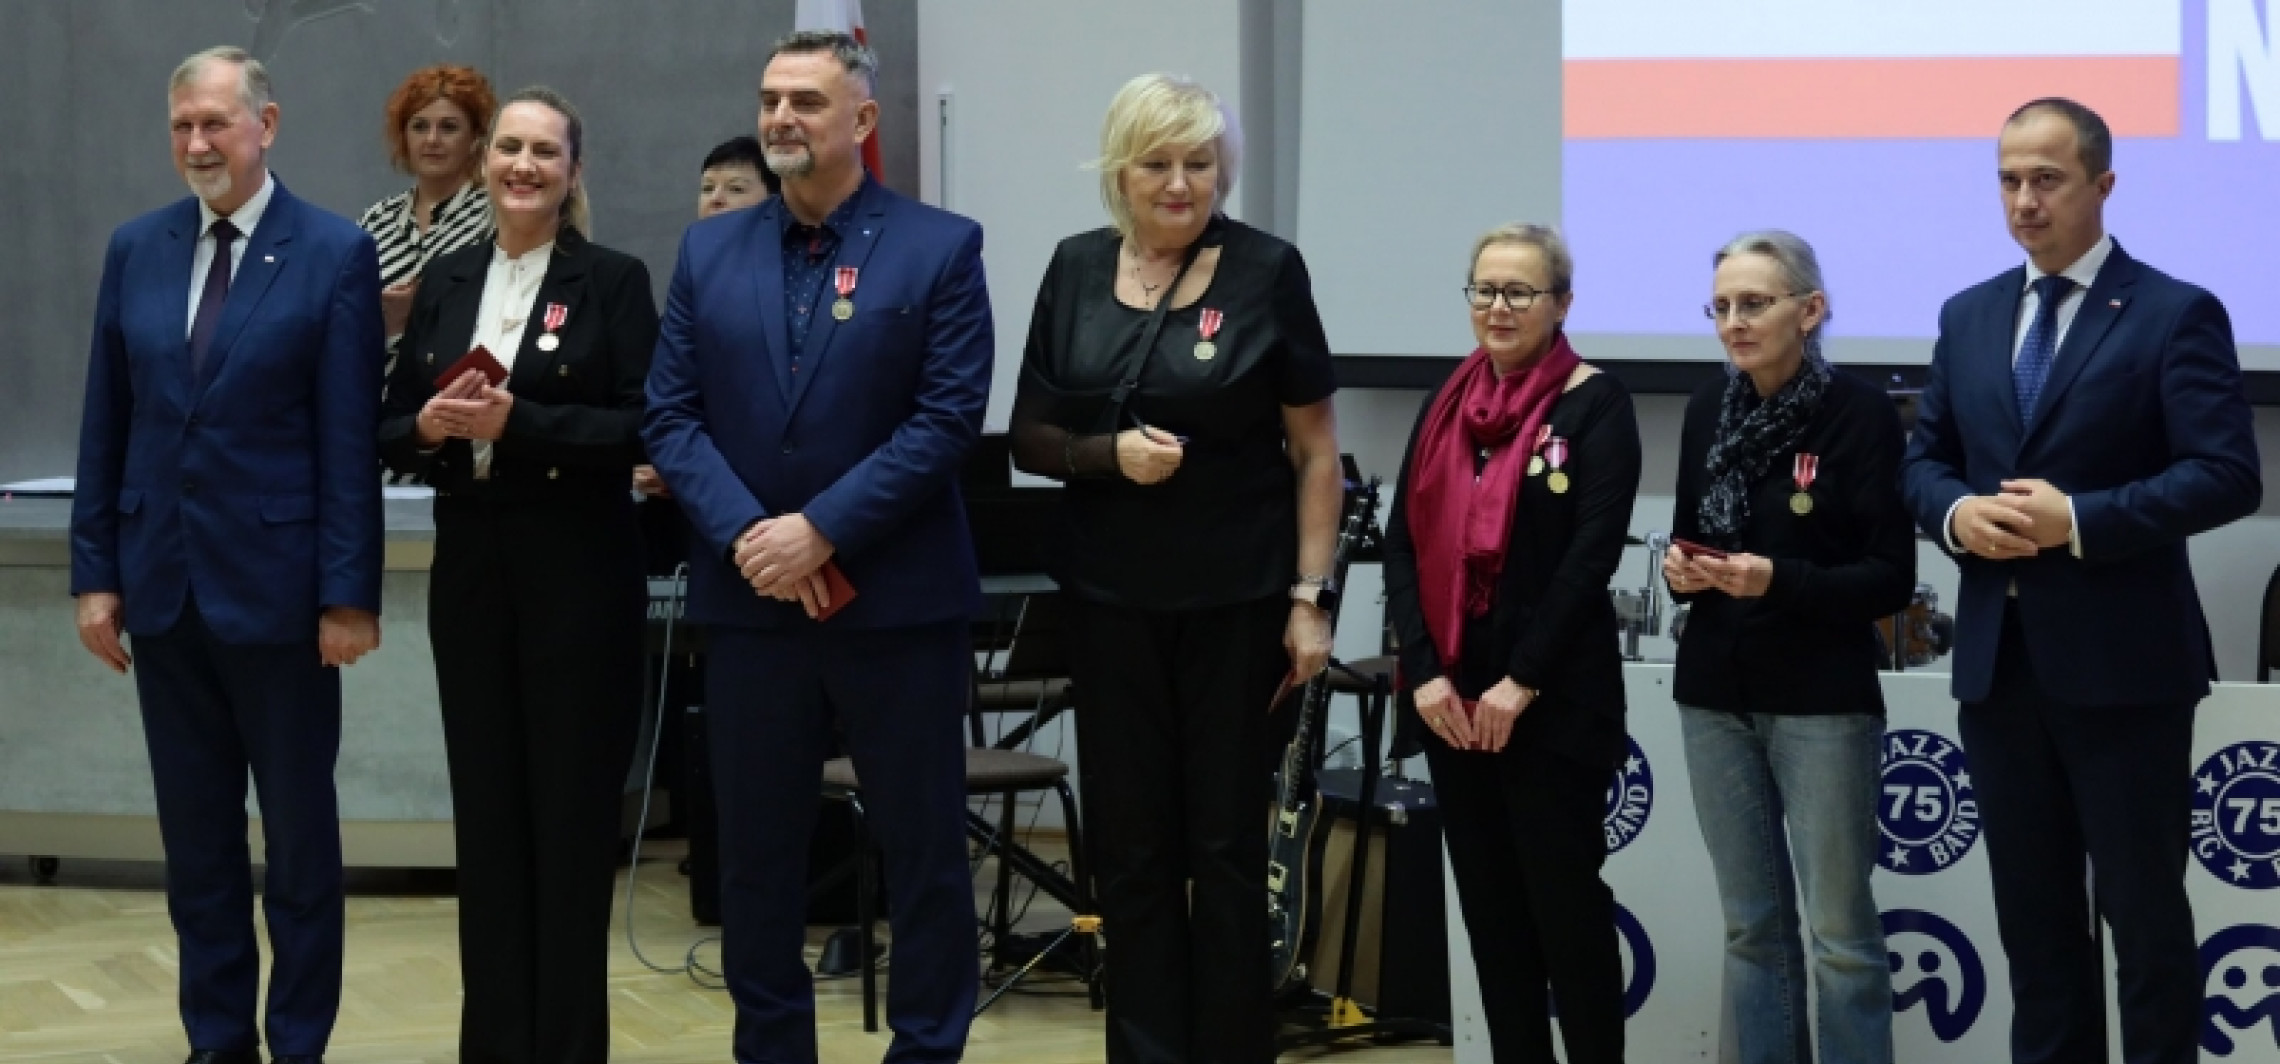 Inowrocław - Inowrocławscy nauczyciele uhonorowani odznaczeniami państwowymi